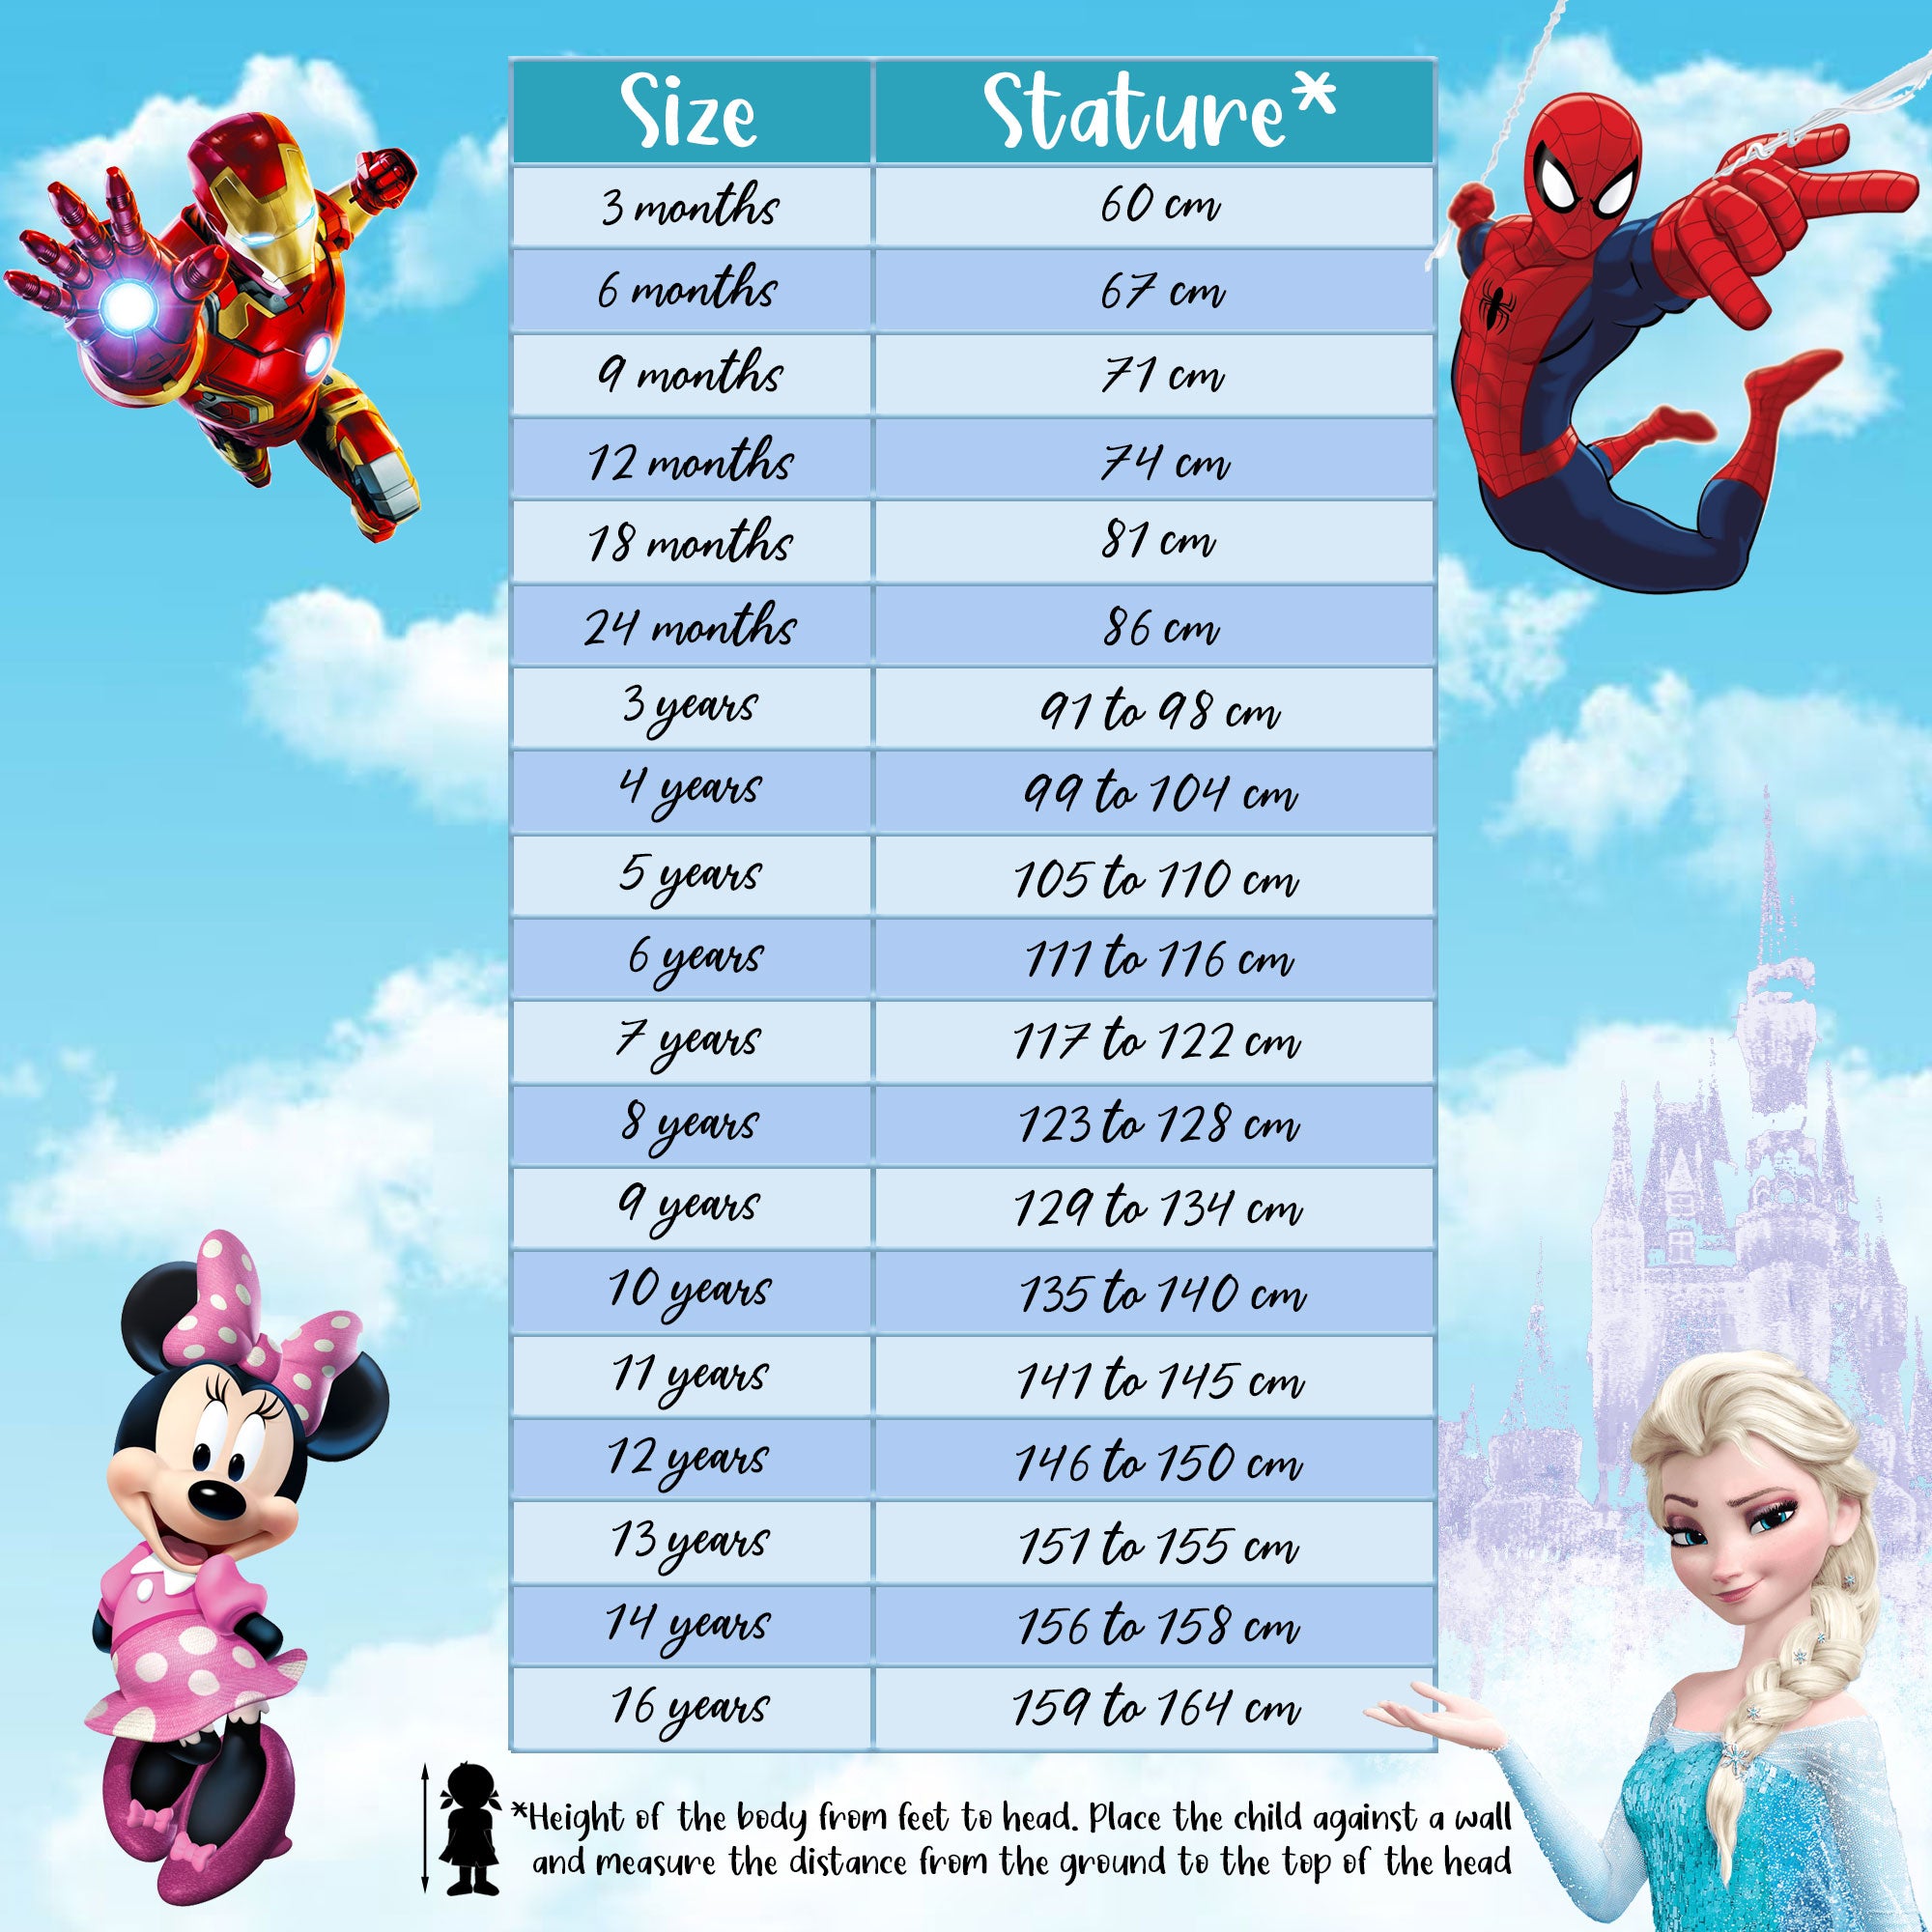 Costume da bagno bambina Disney Frozen Elsa e Anna due pezzi bikini mare 6156